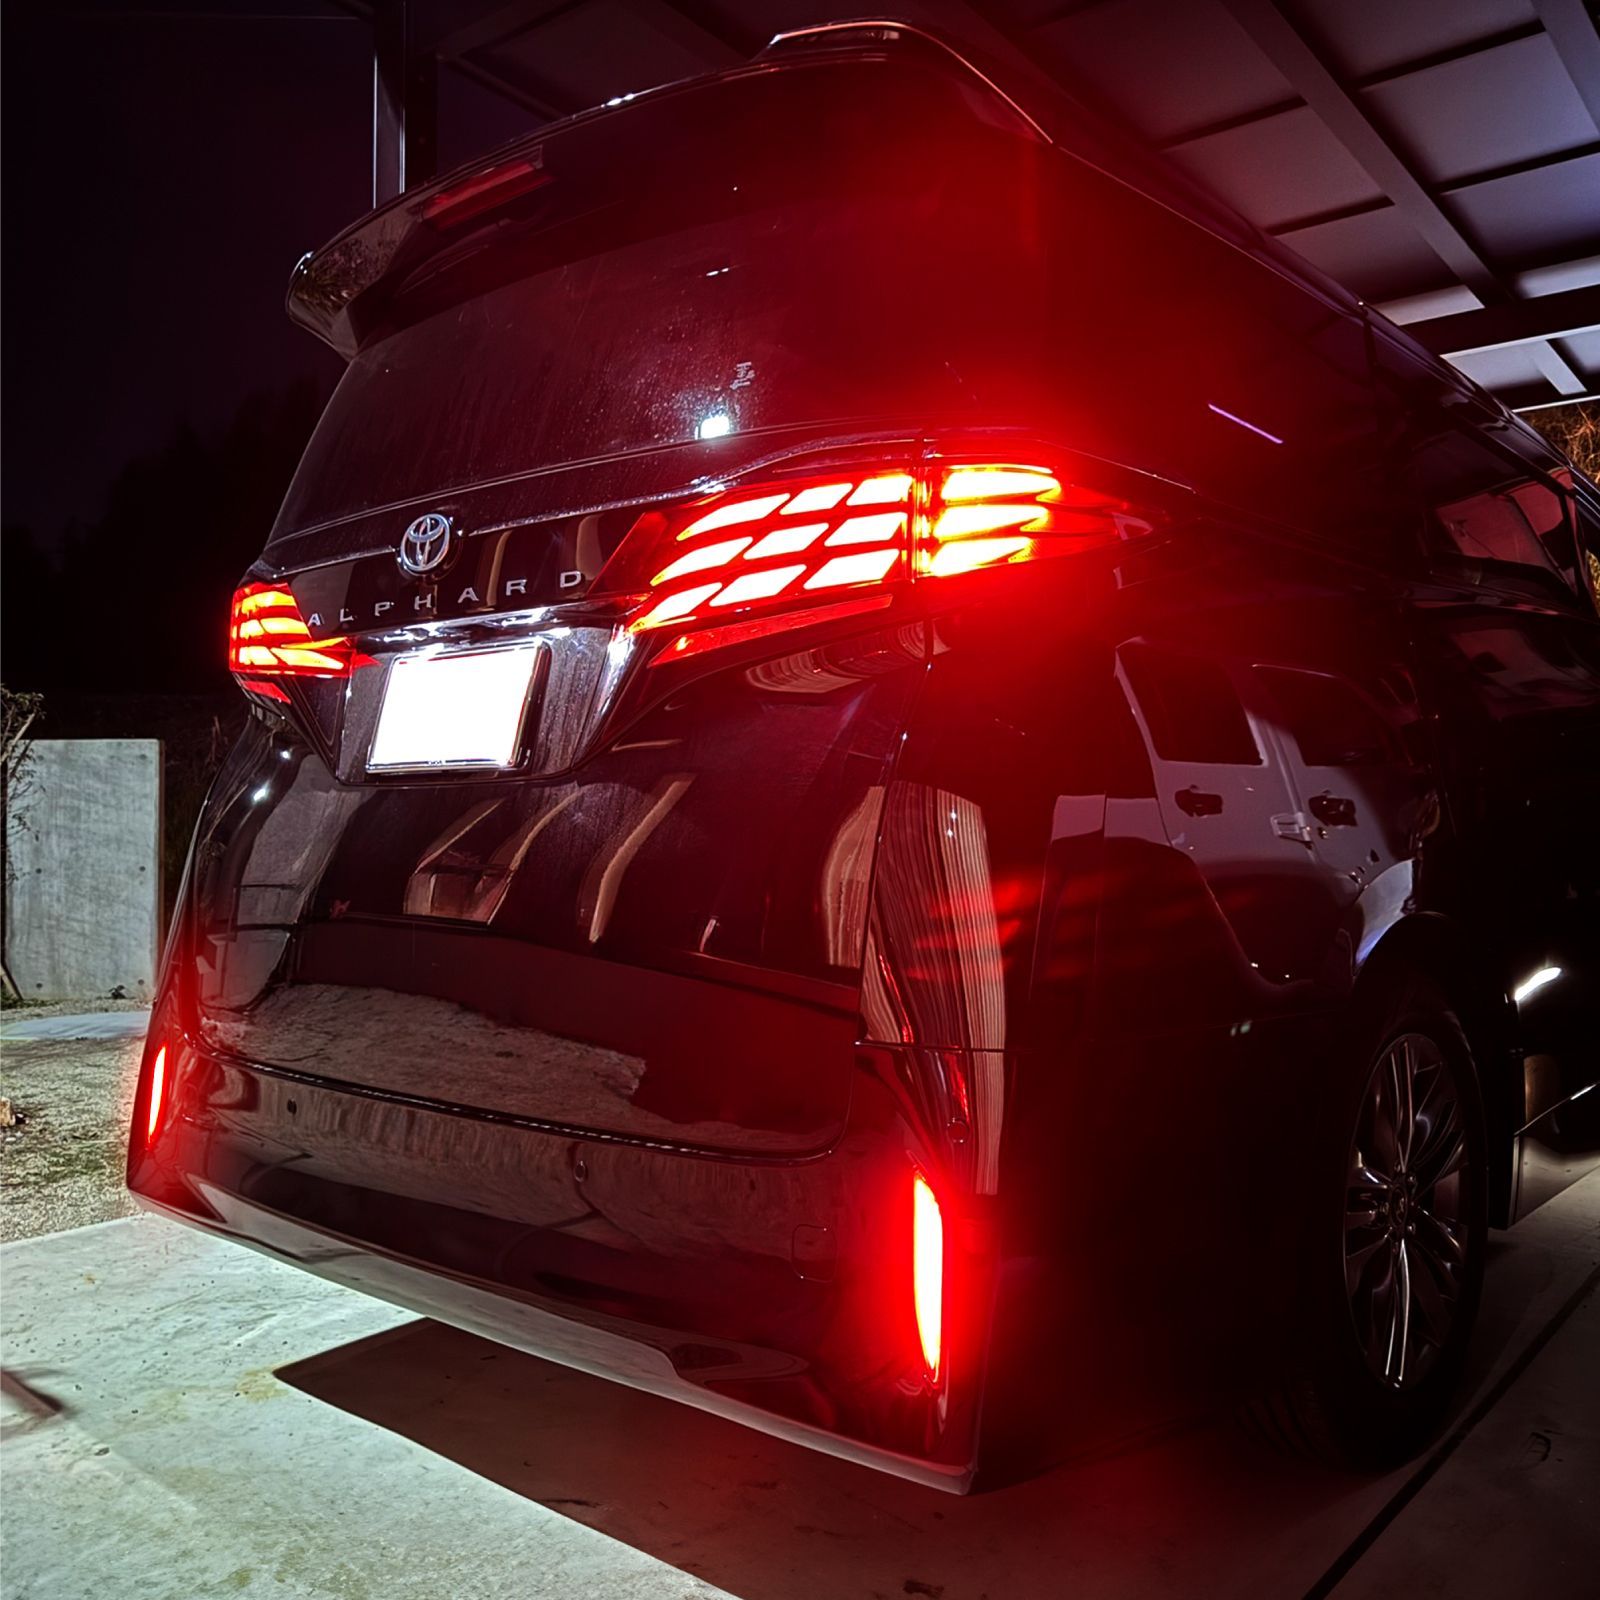 アルファード 40系 LEDリフレクター ランプ 外装 パーツ ブレーキランプ テールランプ 反射板 リア テール アルファード40 トヨタ カスタム  - メルカリ